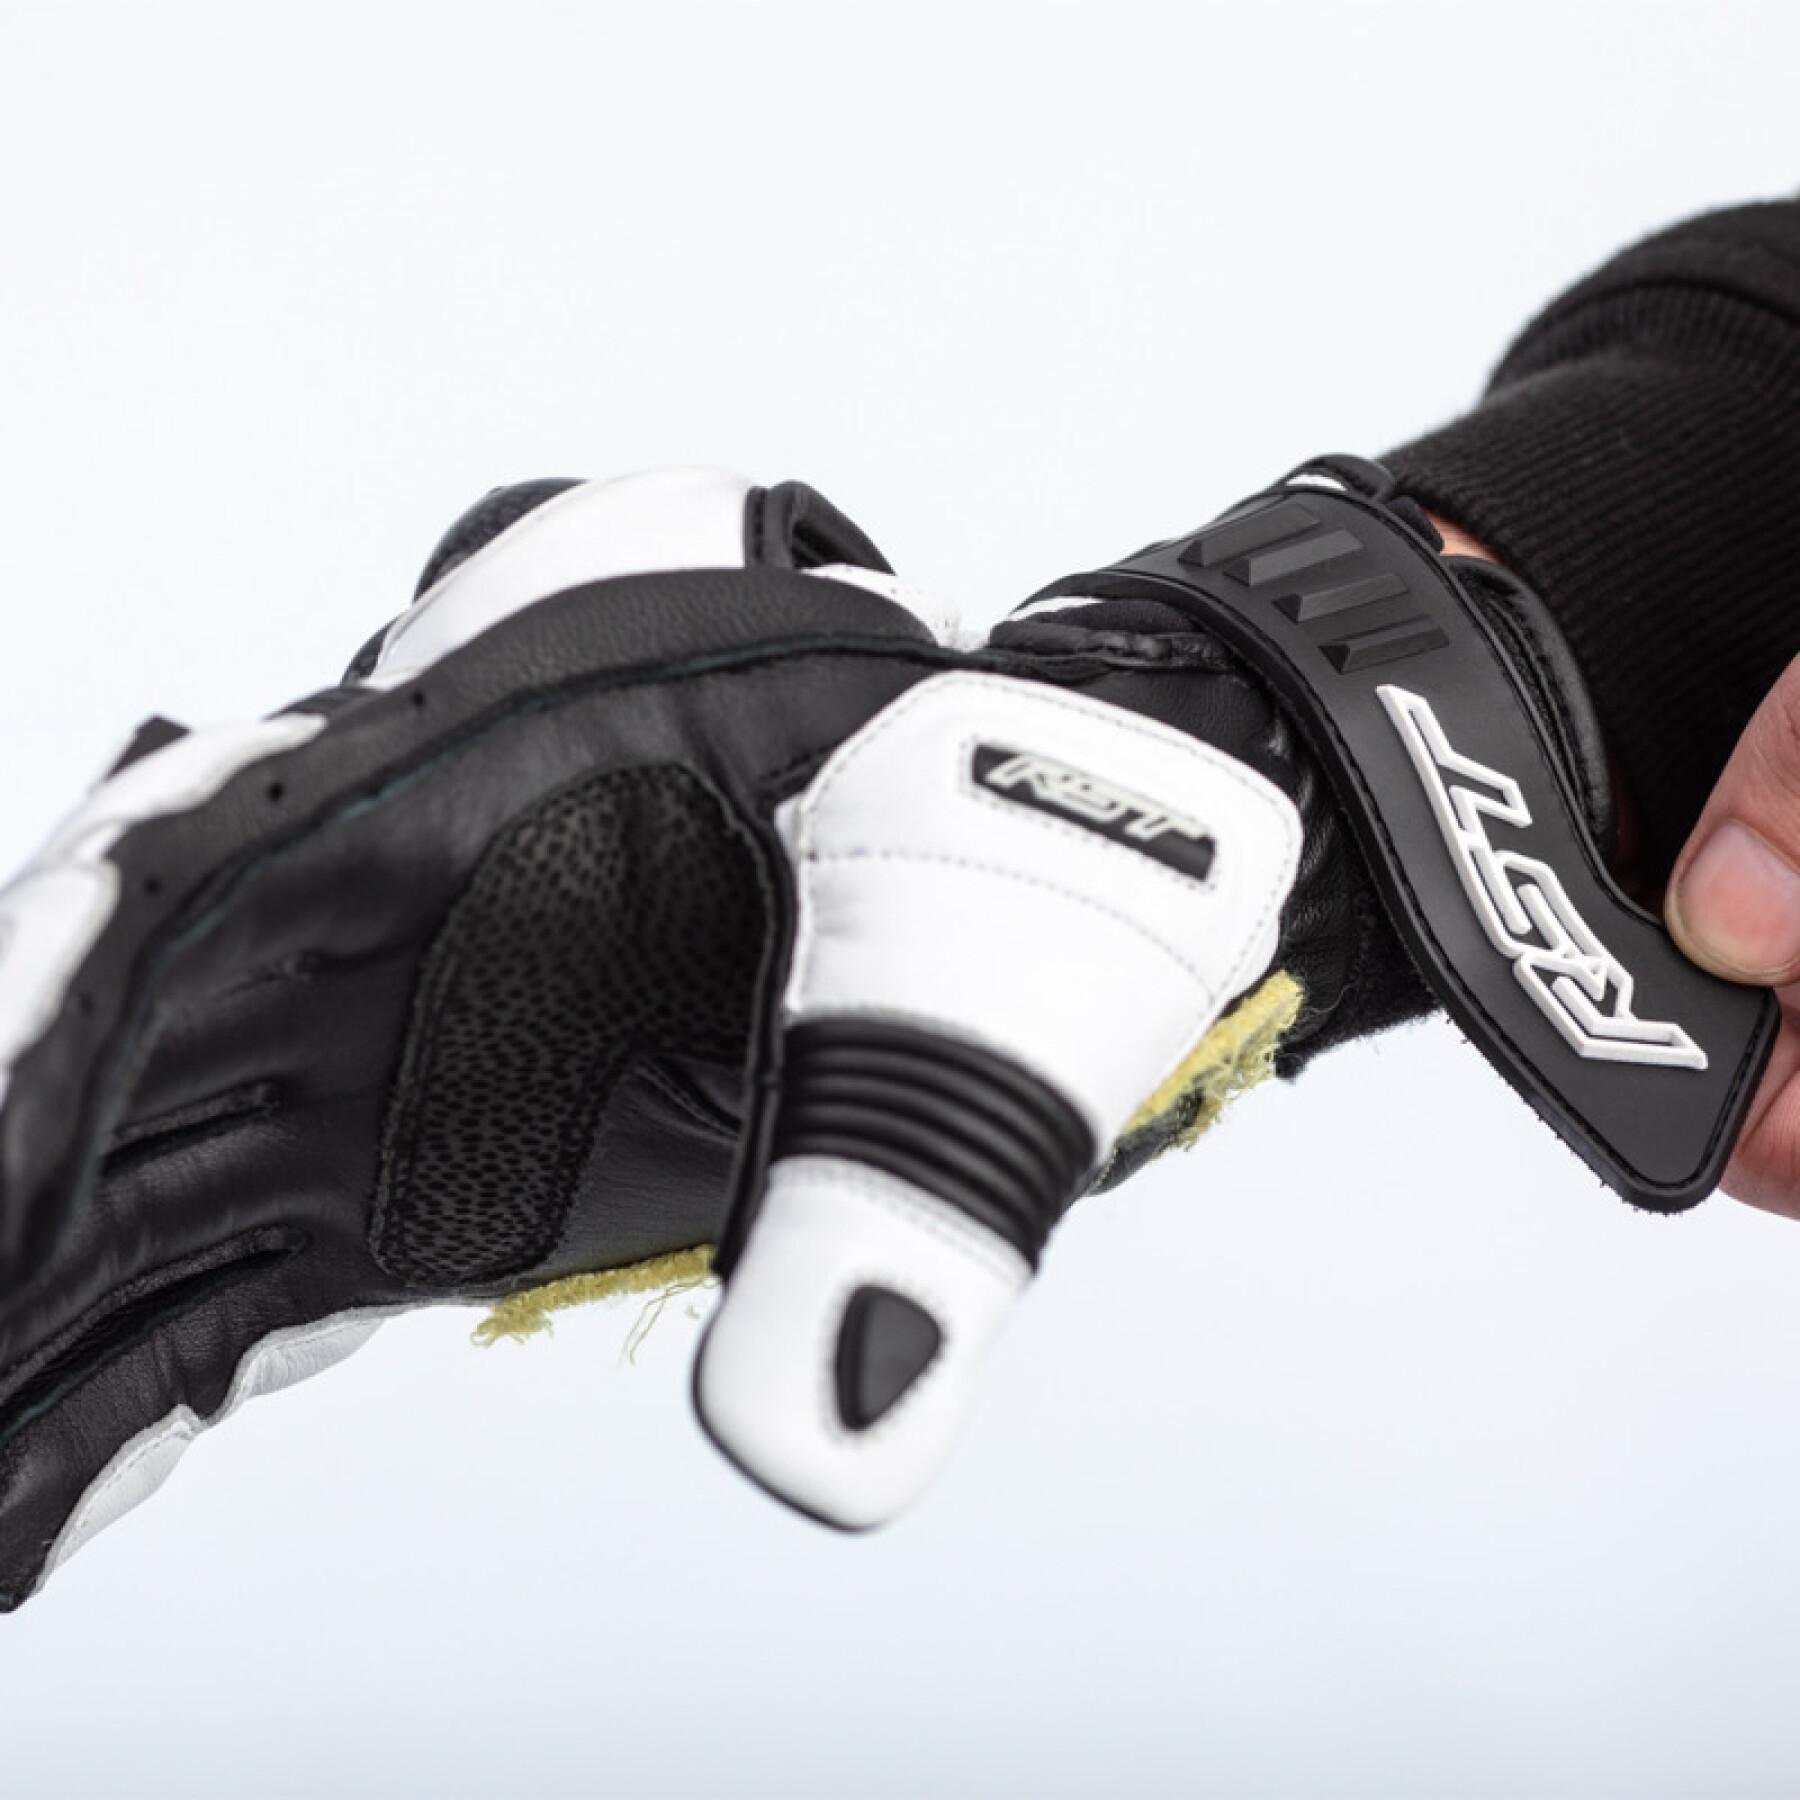 Motocross-handskar RST Tractech Evo 4 short